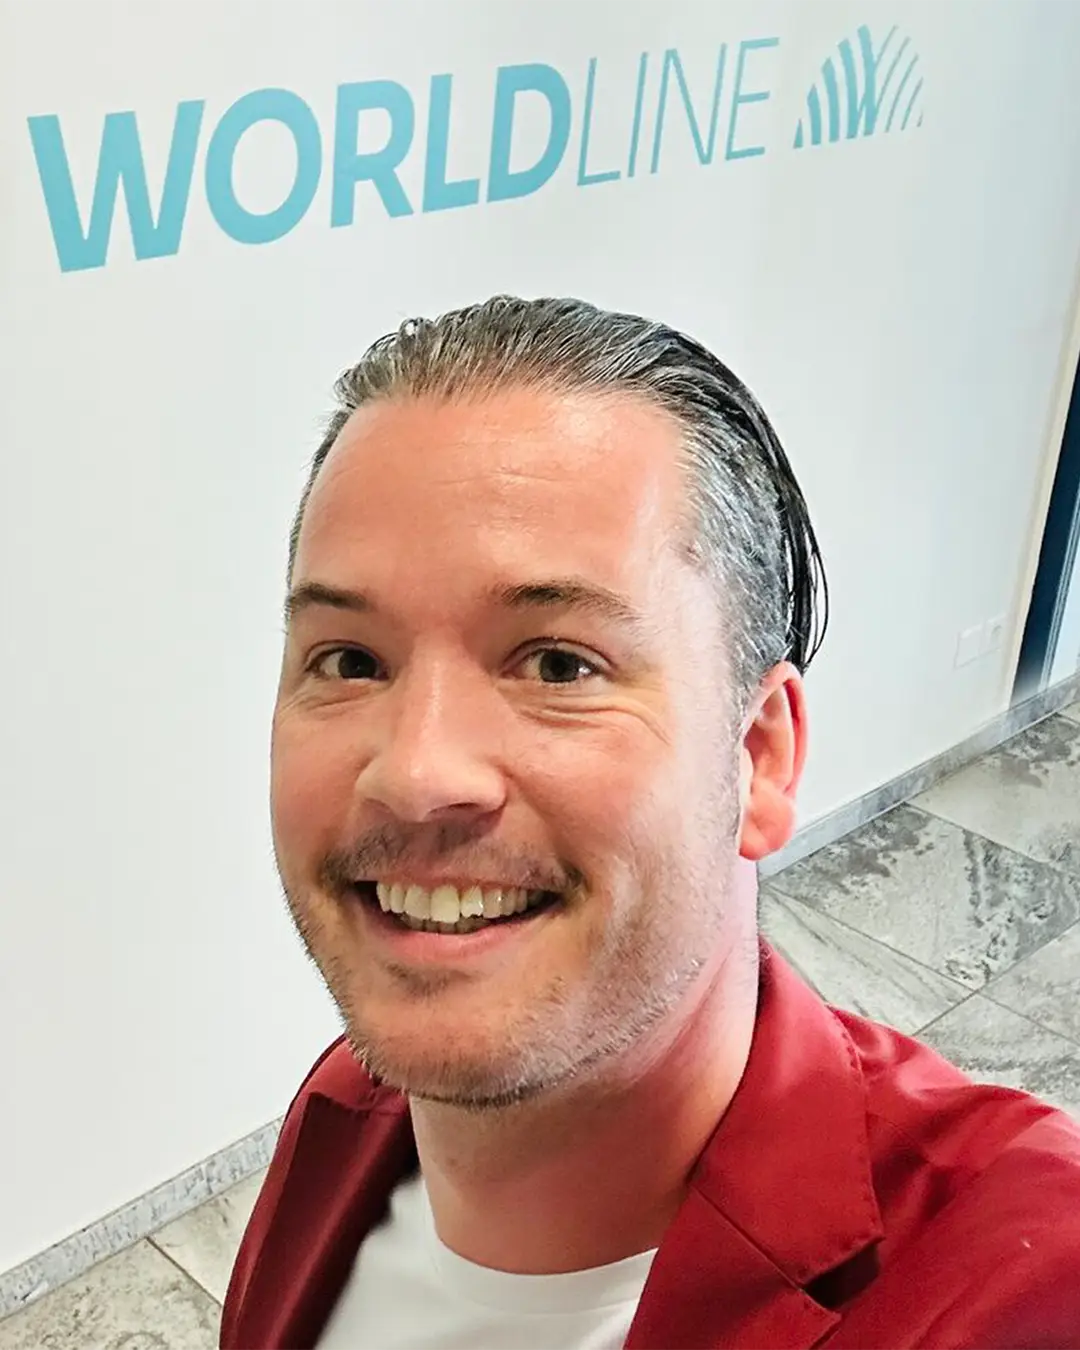 Christian Panzeri im Gebäude vor dem Worldline Logo